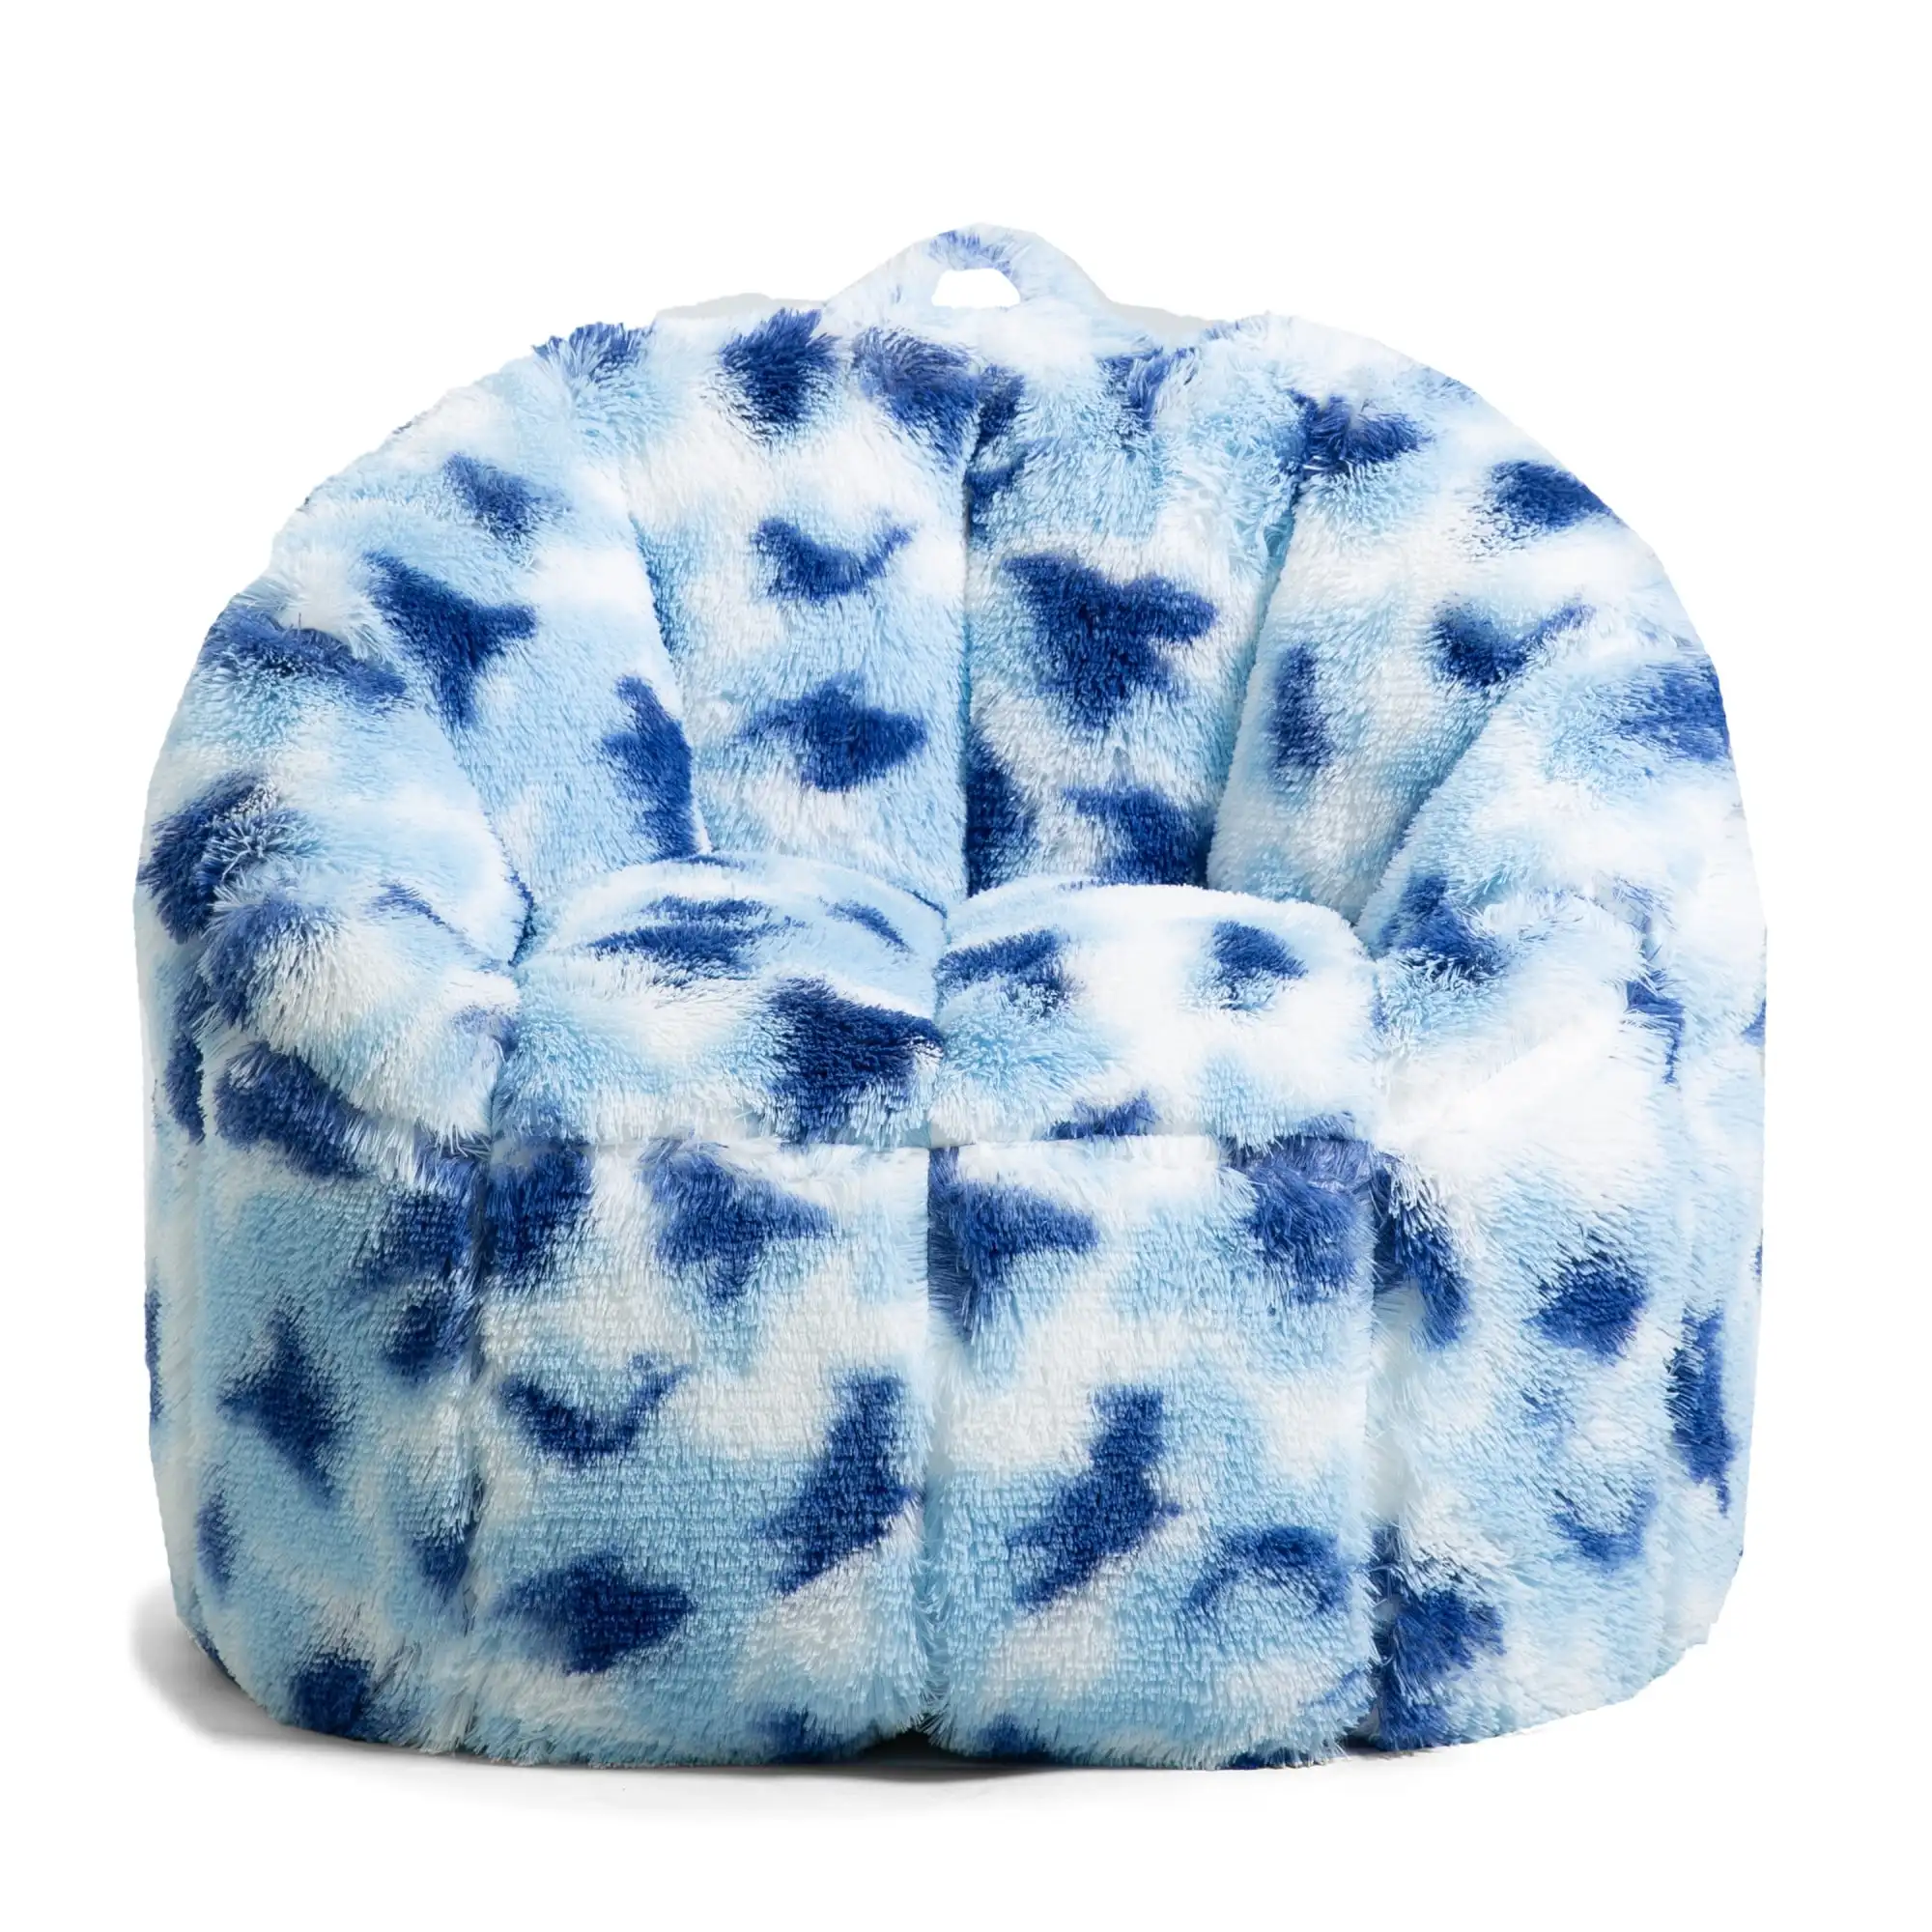 

2.5 Feet Bean Bag Chair, Tie Dye Bean Bag Couch Filled Lazy Sofa with Soft Faux Fur Cover (Indigo)